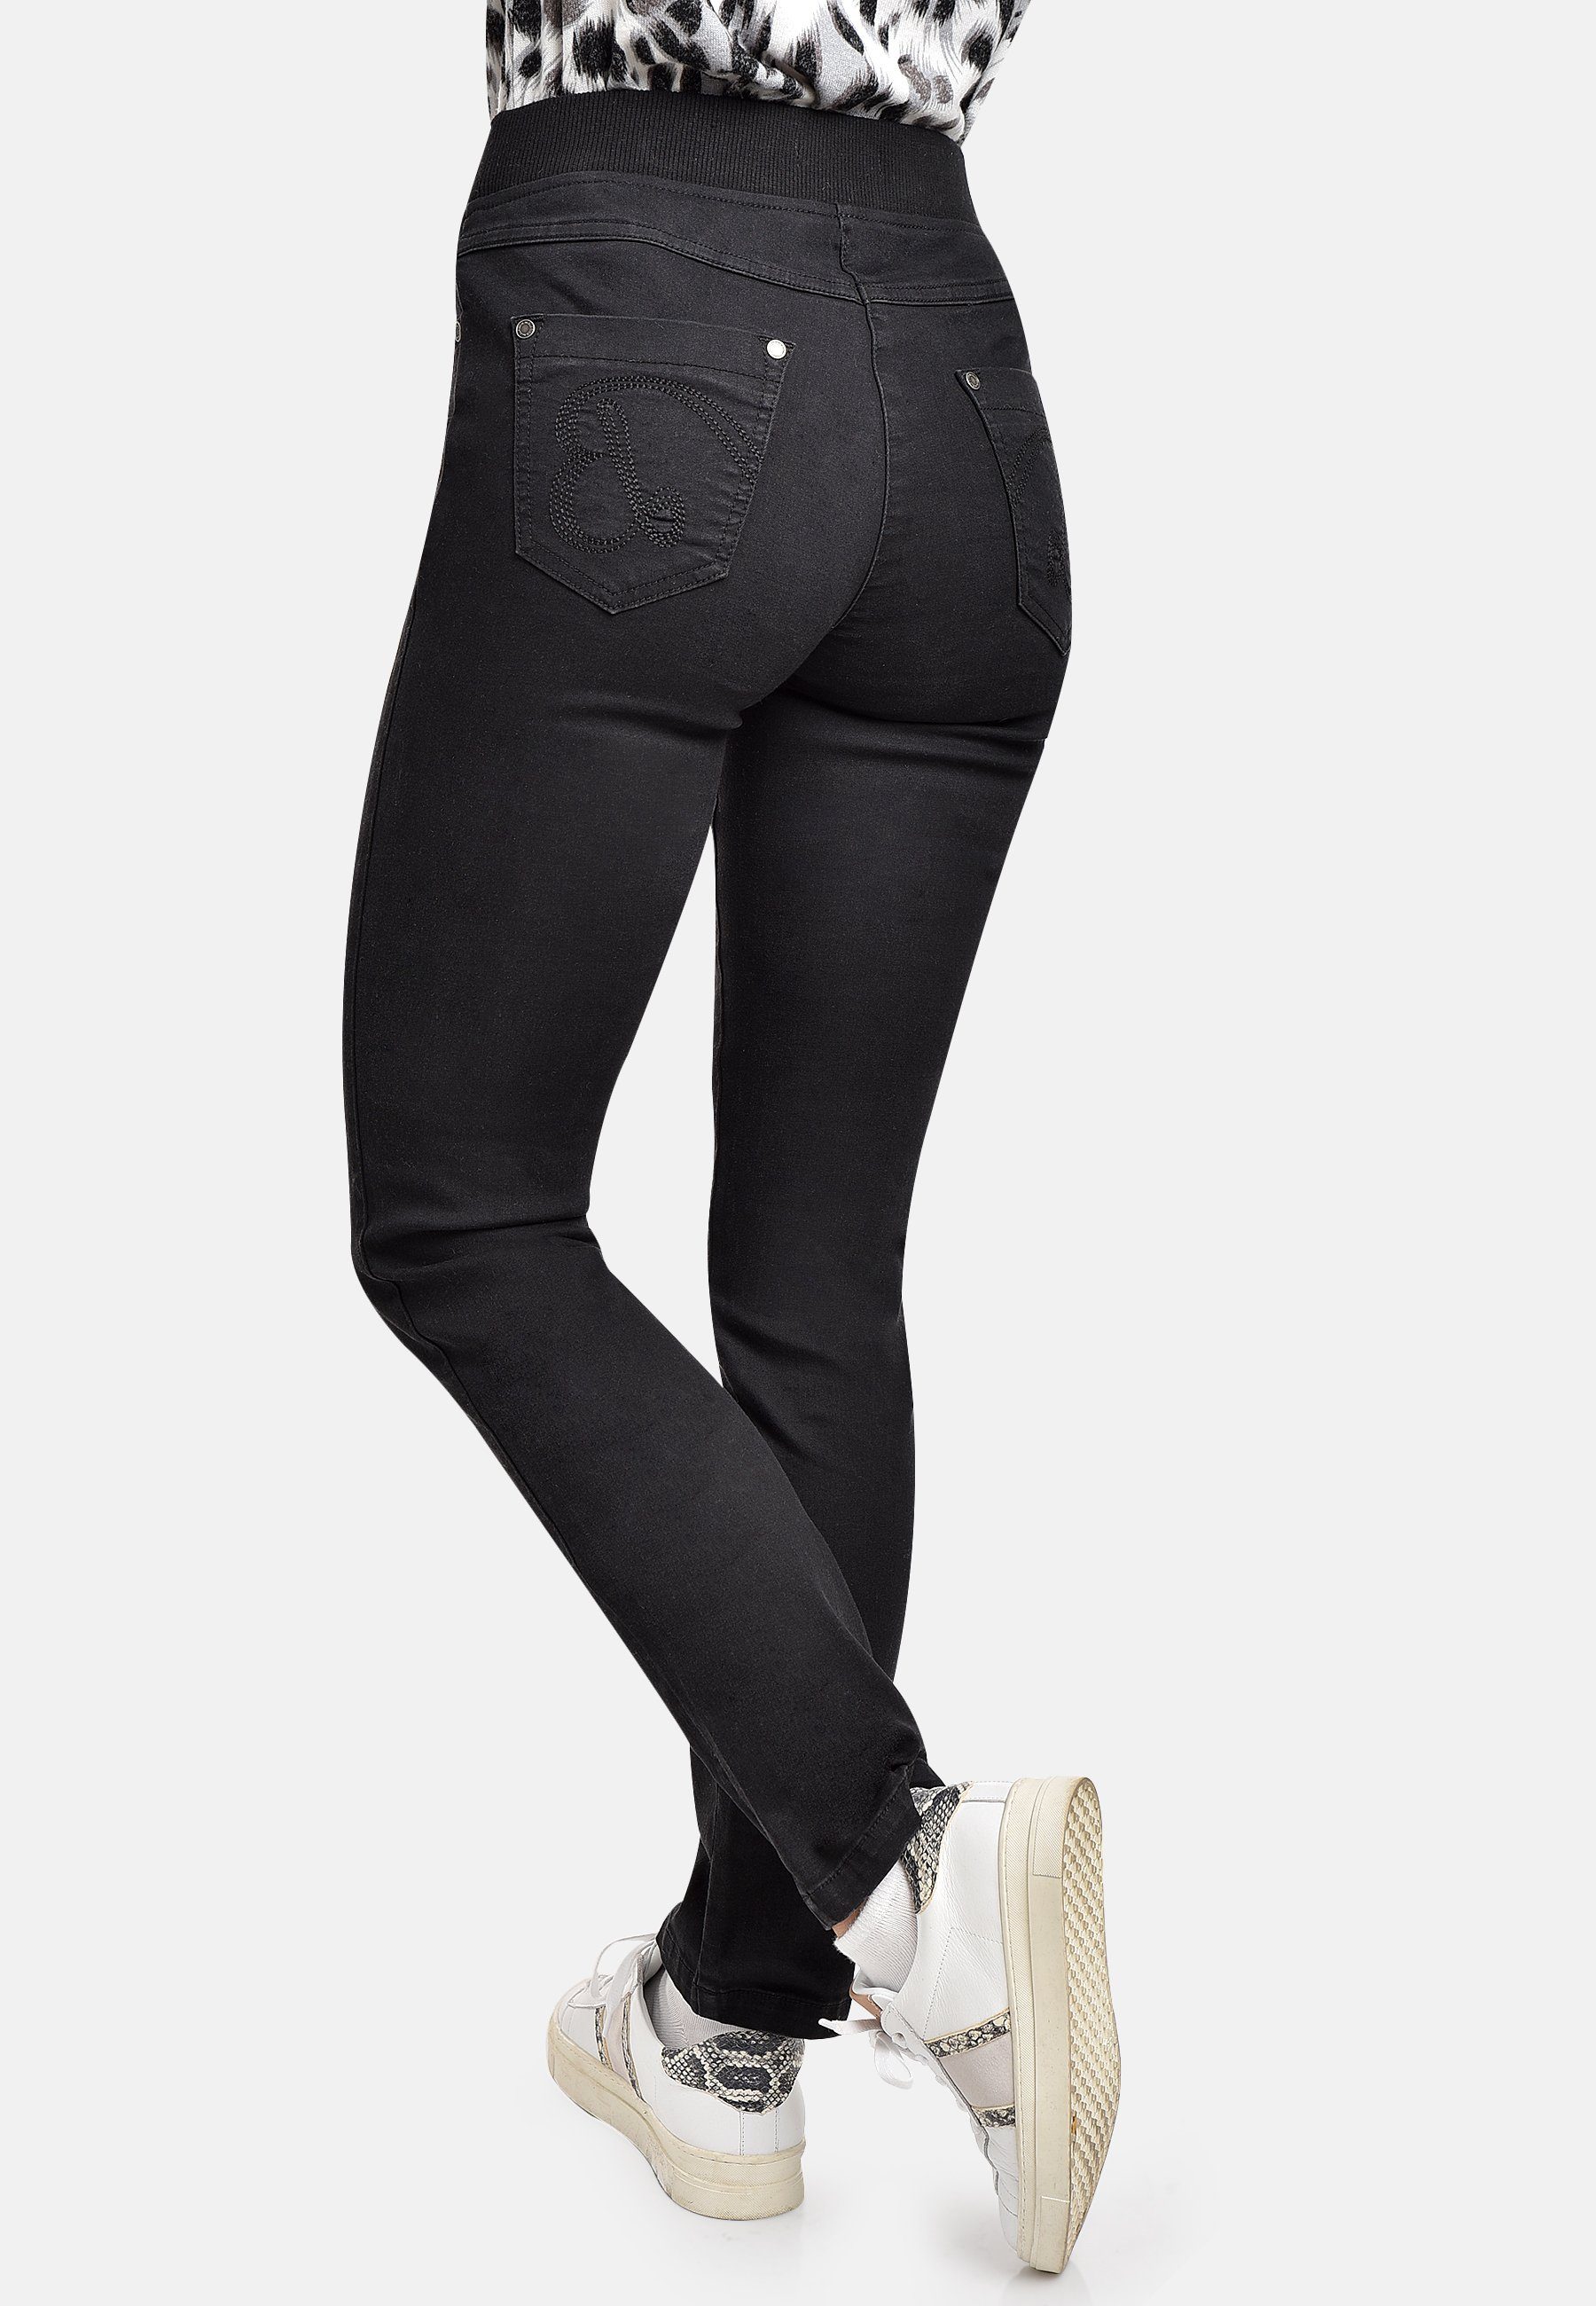 (1-tlg) BICALLA Comfort 20/black - 30 Regular-fit-Jeans